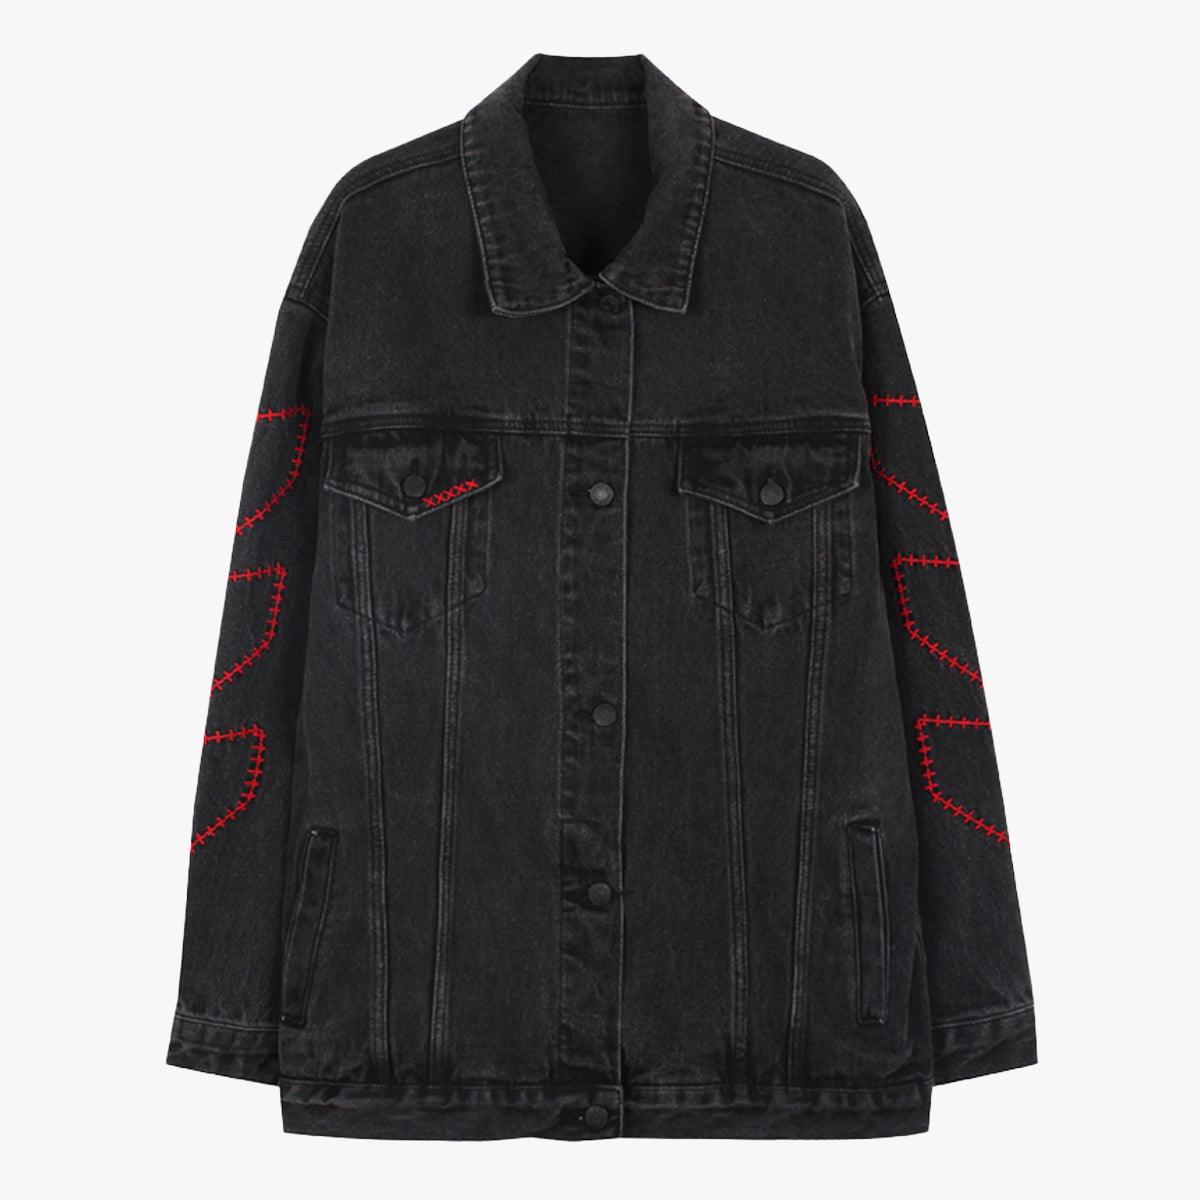 Cross Stitch Black Grunge Denim Jacket